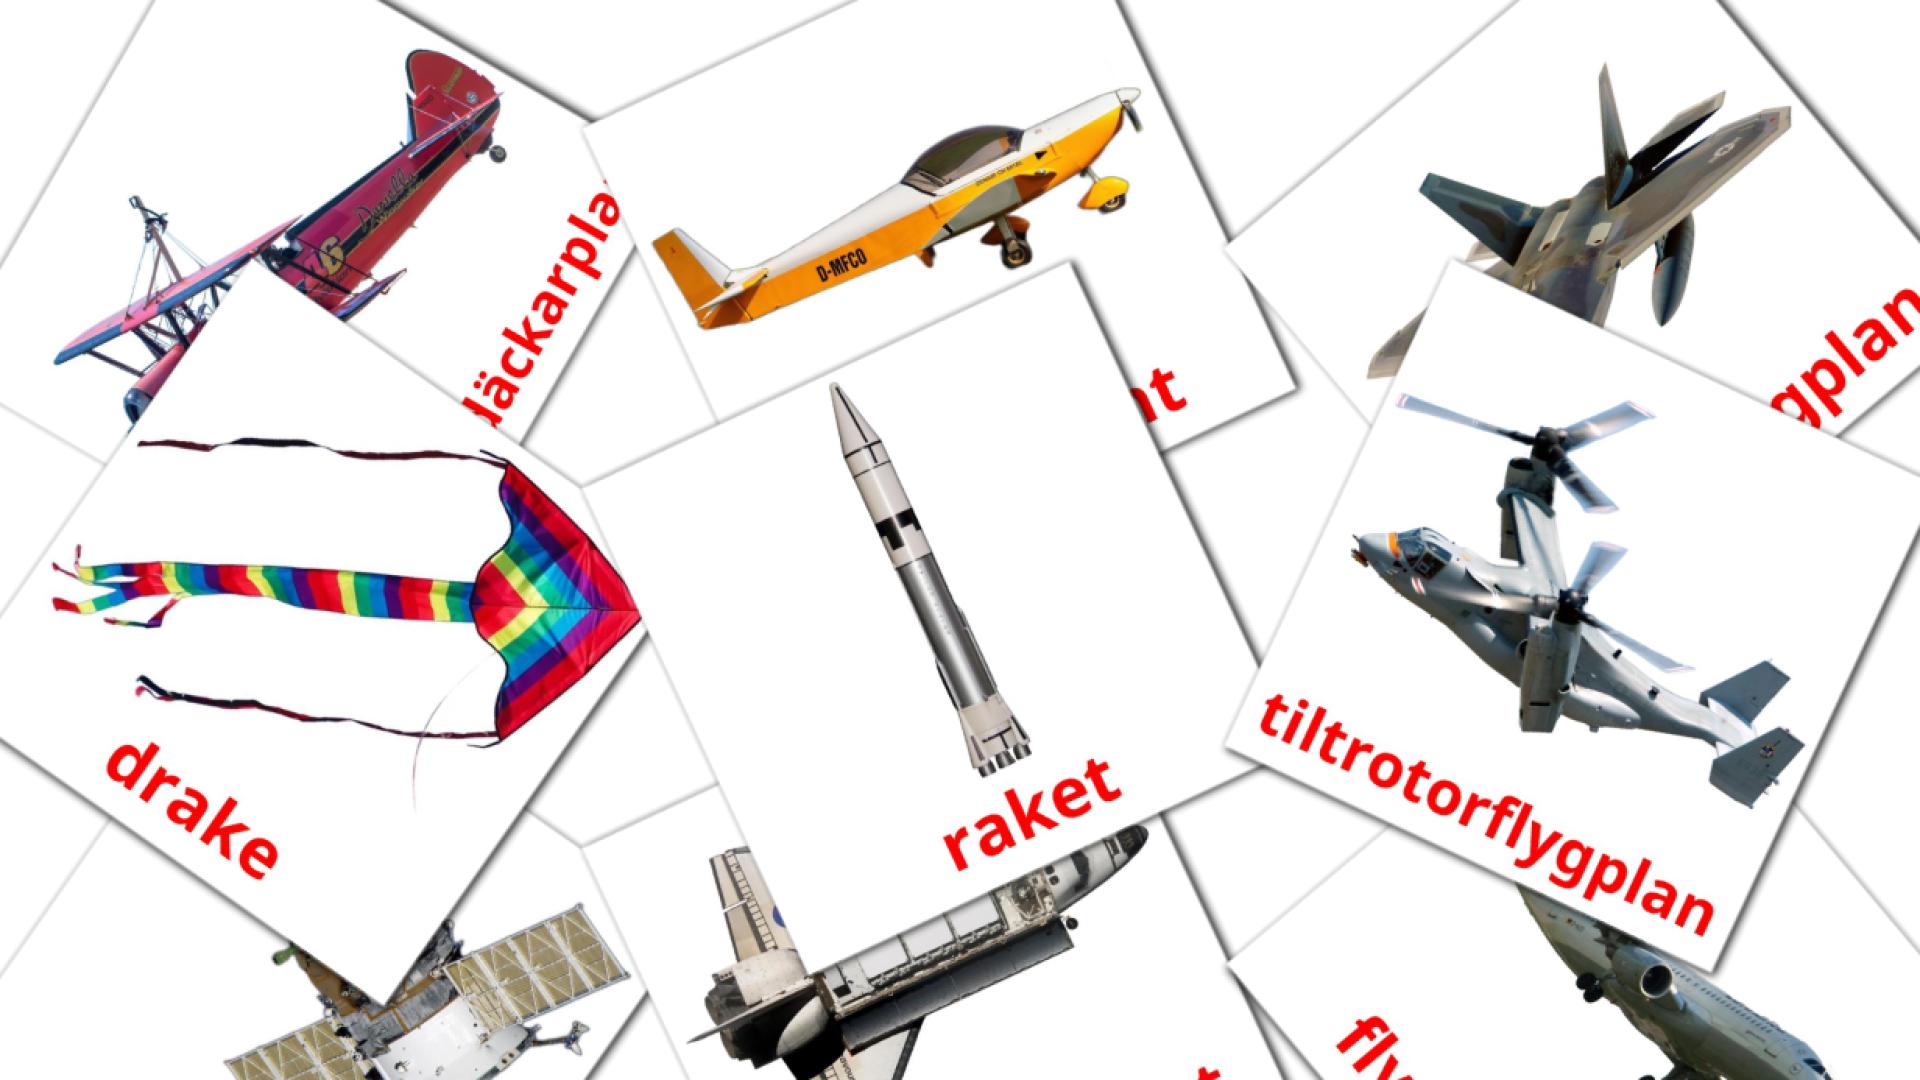 14 Bildkarten für Luftfartyg